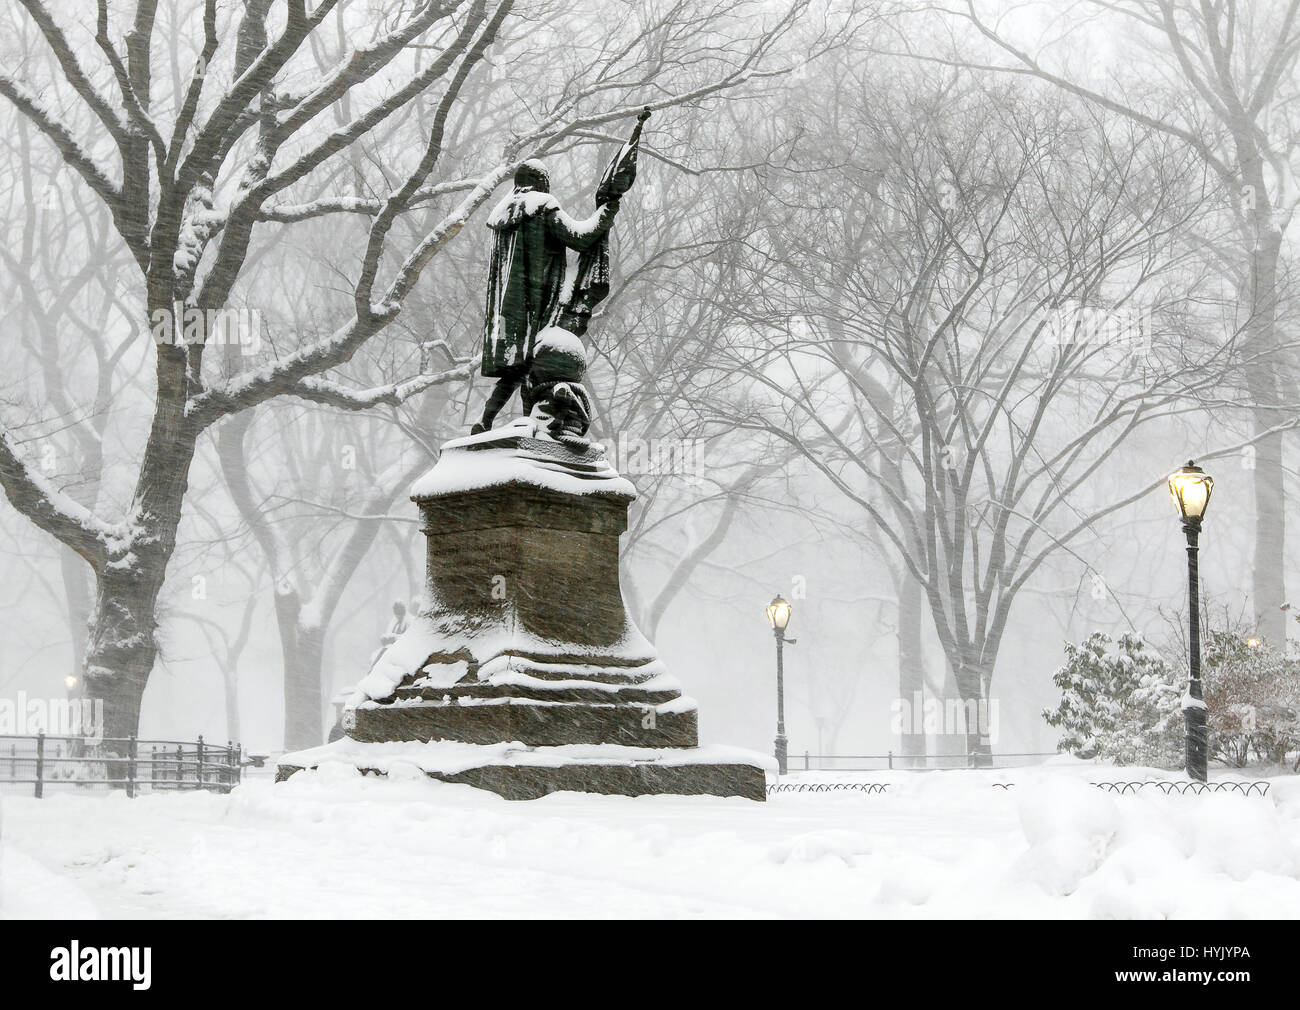 Eine Skulptur von Christopher Columbus in Central Park bei starkem Schneefall. Stockfoto